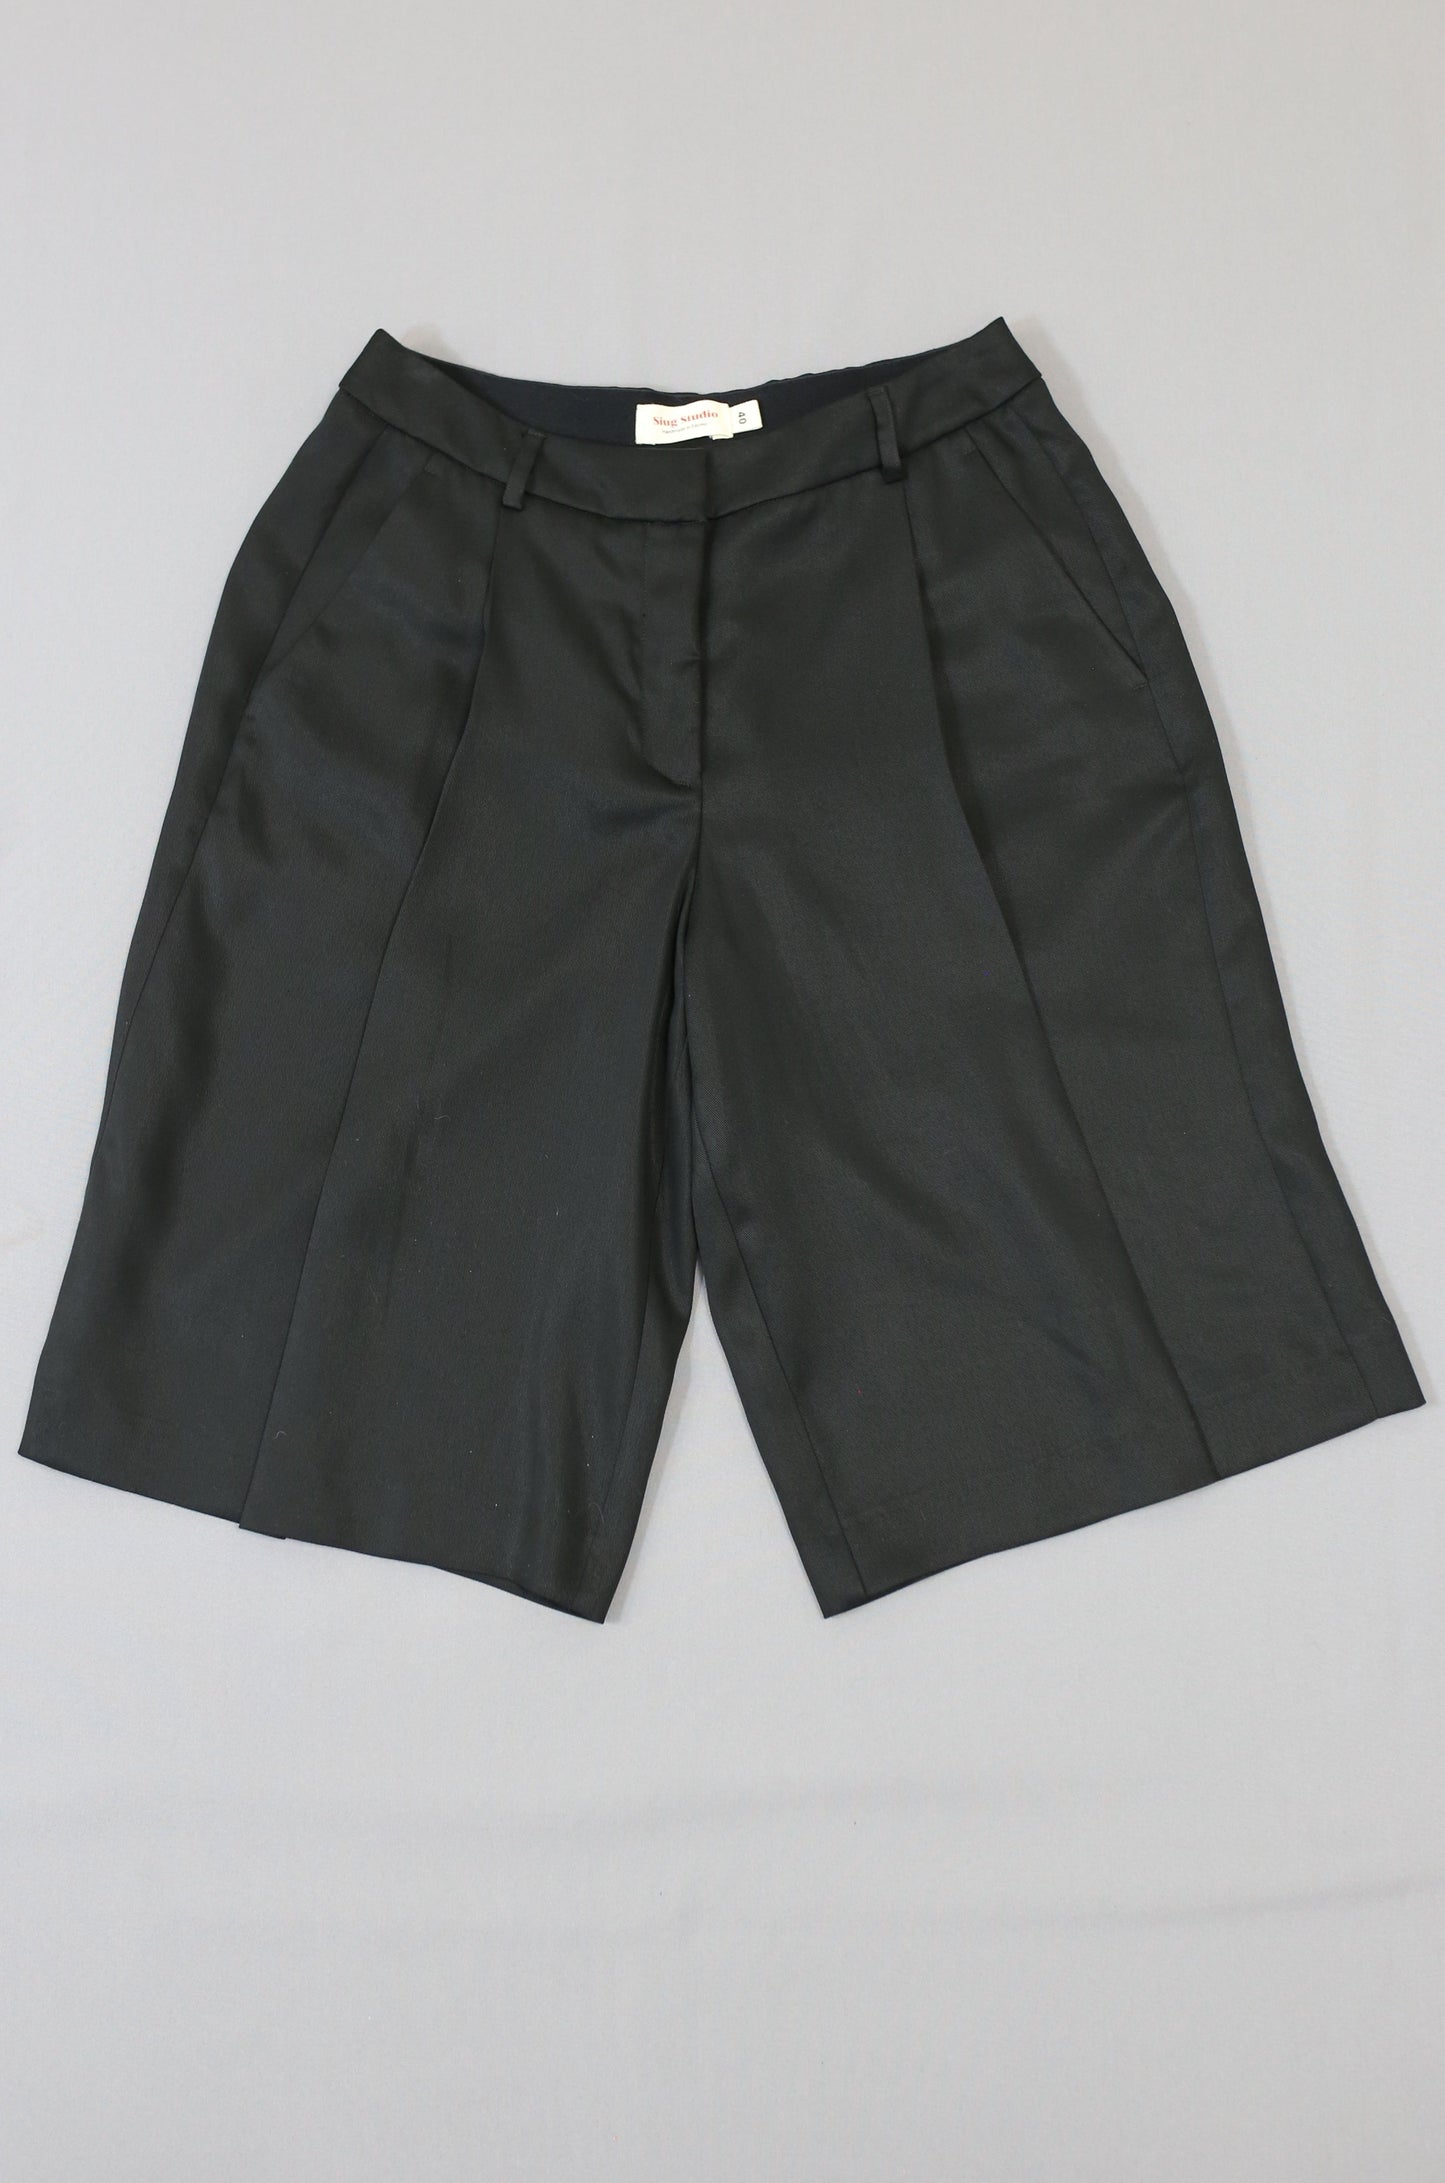 Nr. 009/Zweiteiliger Anzug mit Shorts